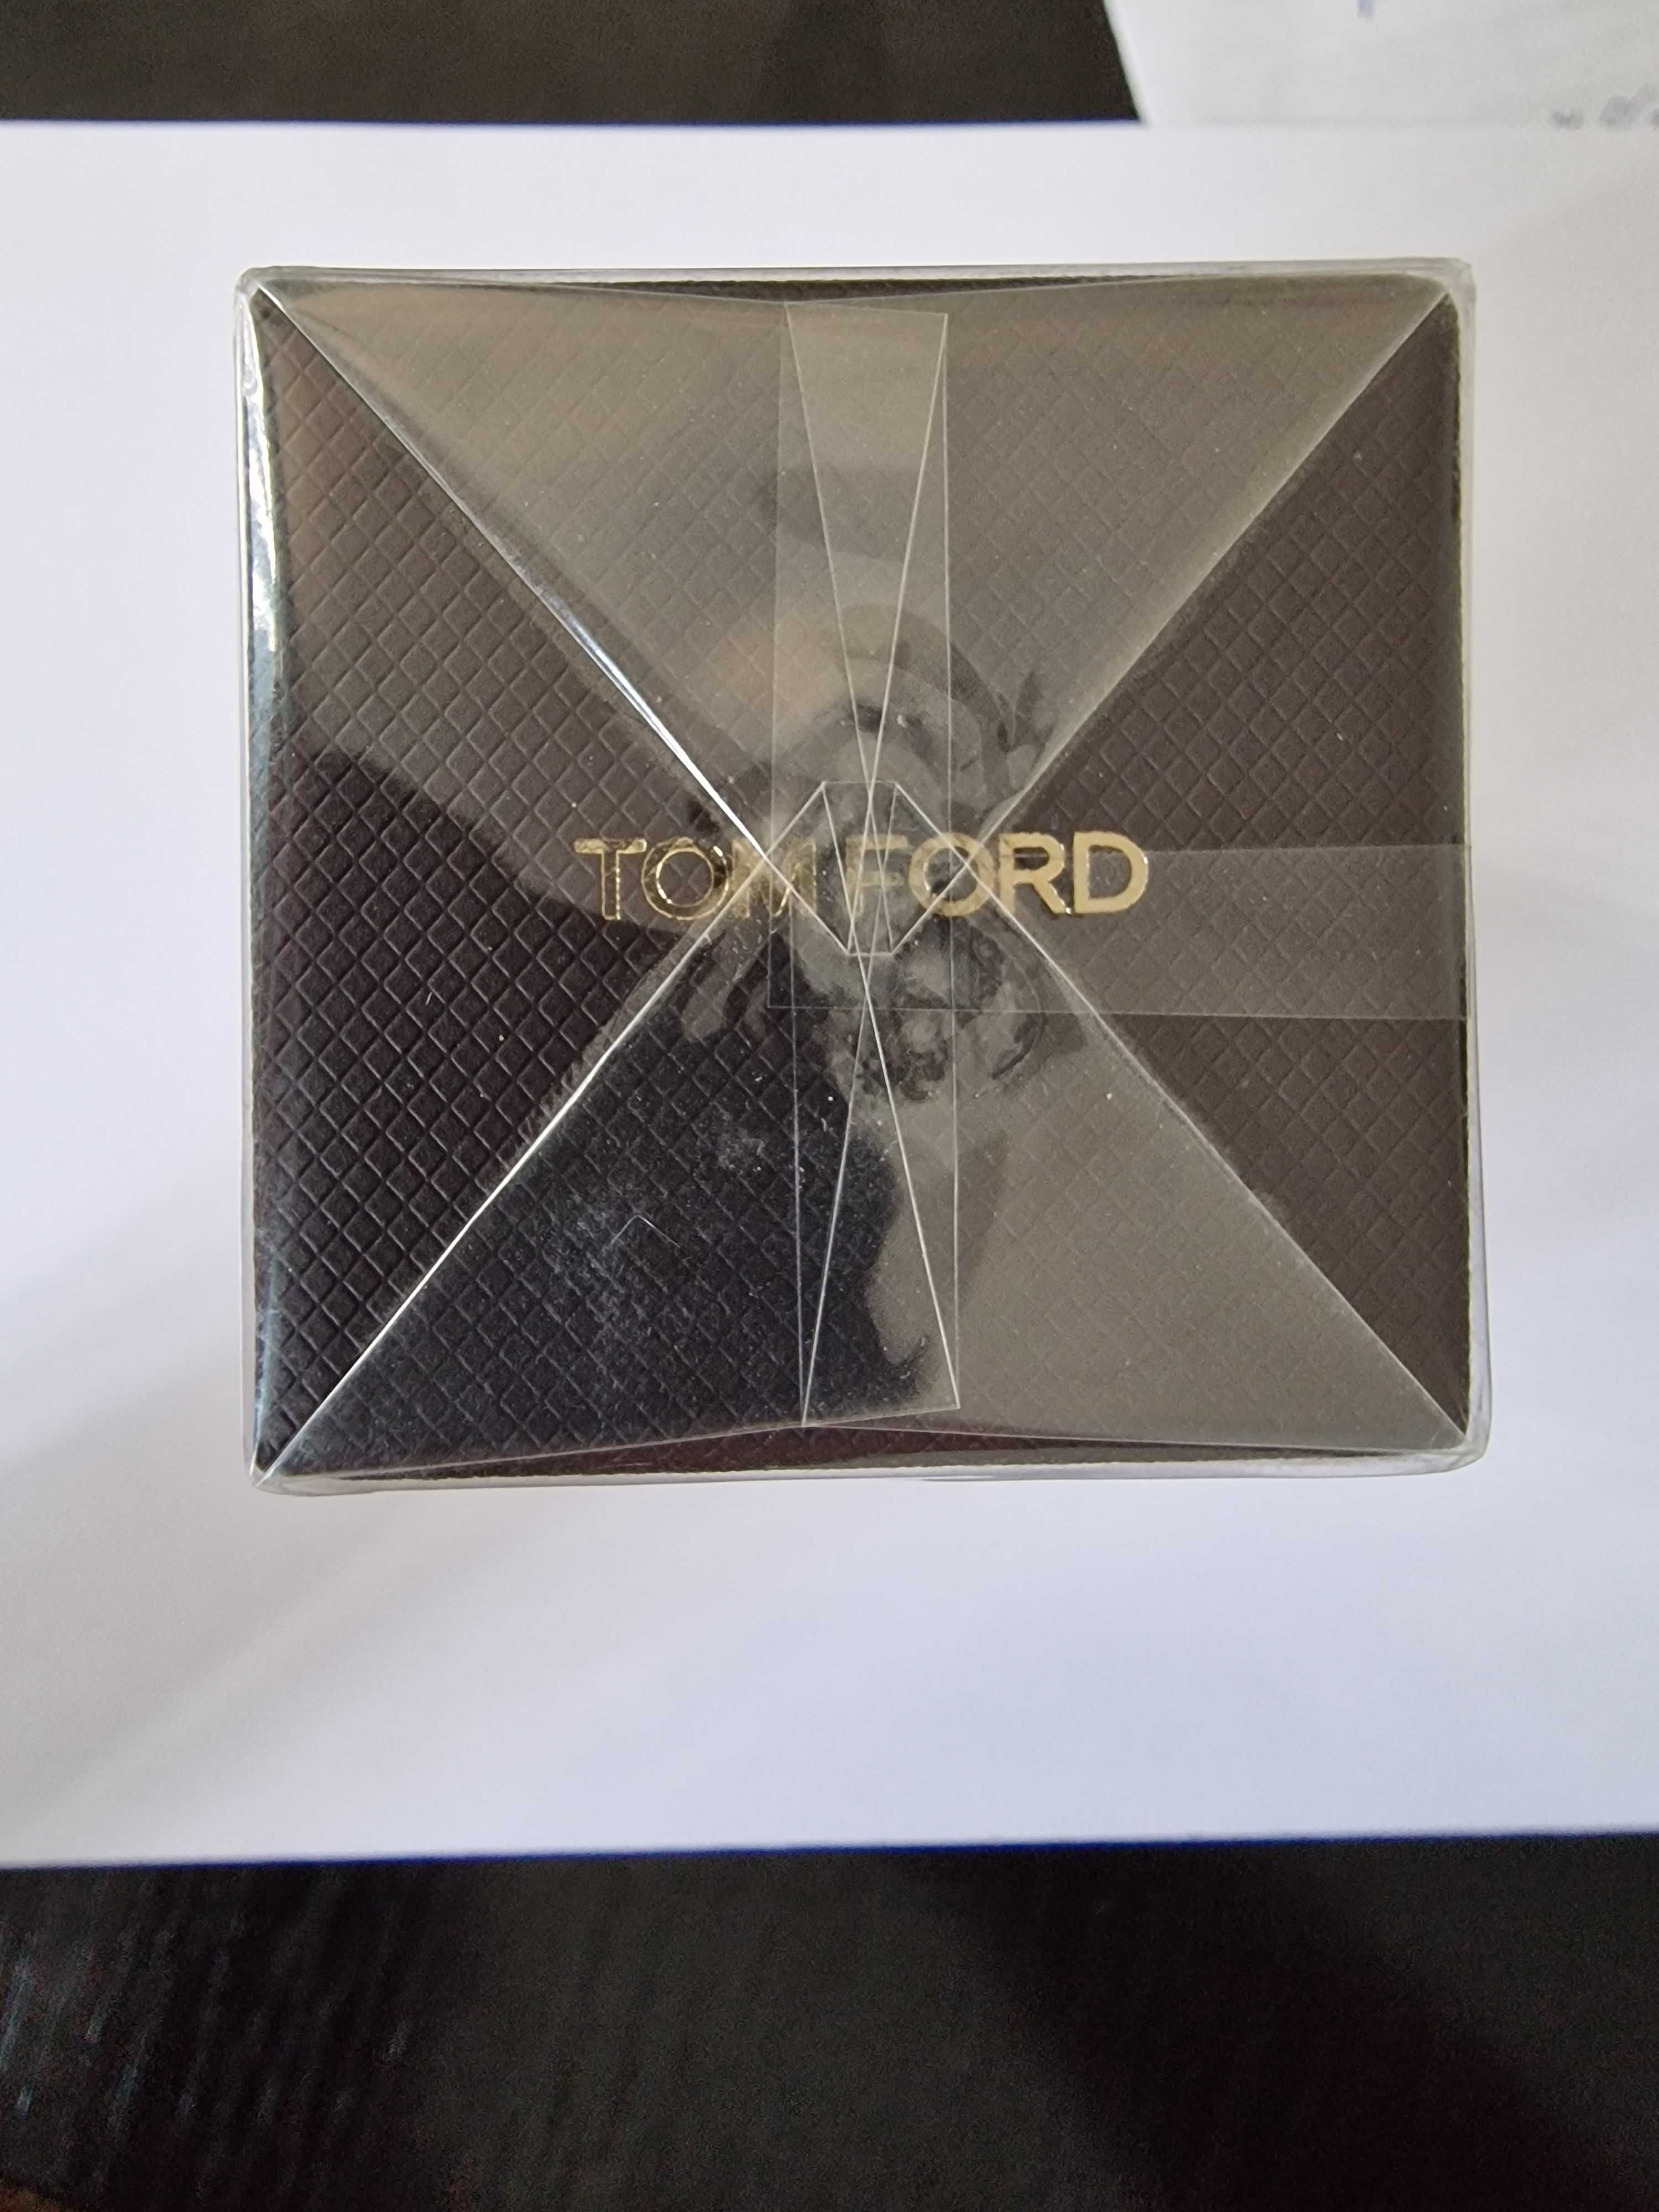 Tom Ford Vert D'encens 50ml